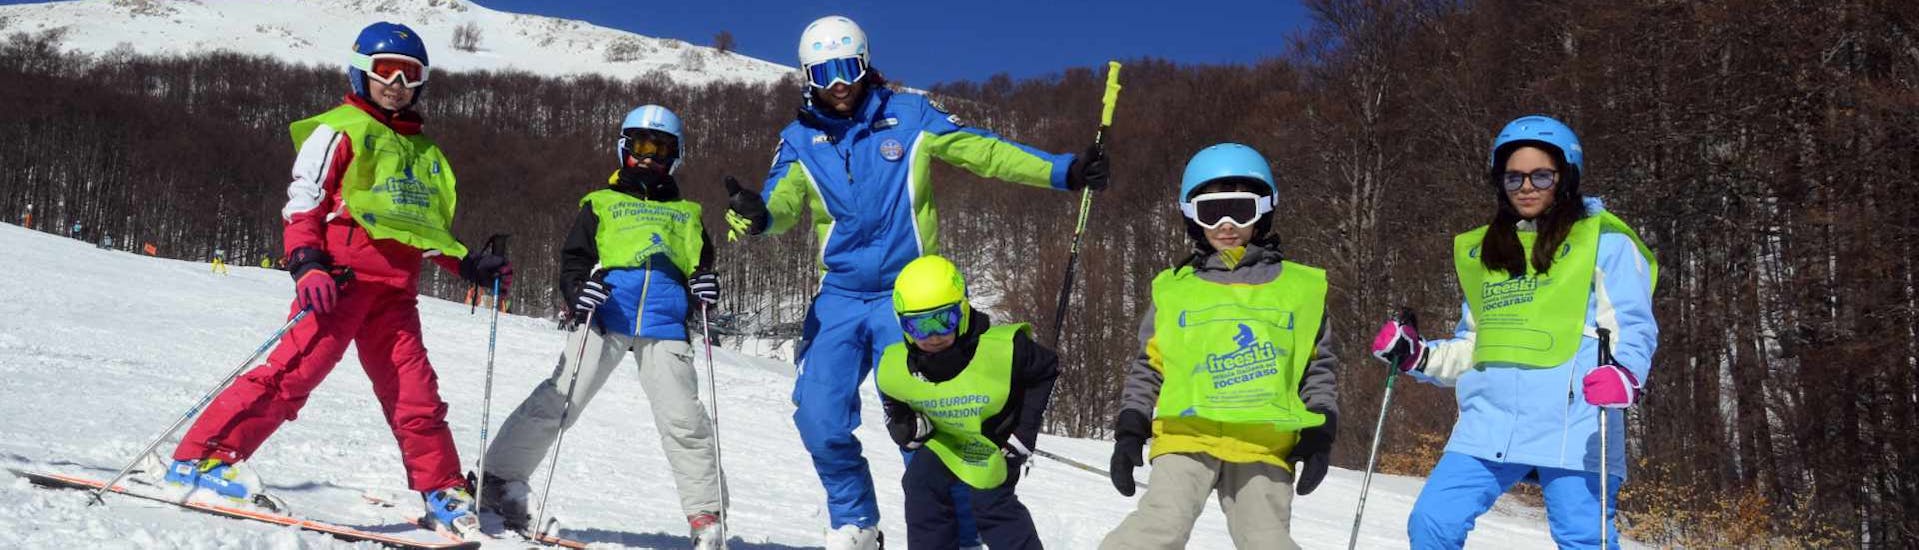 Cours de ski Enfants dès 5 ans - Intermédiaire.